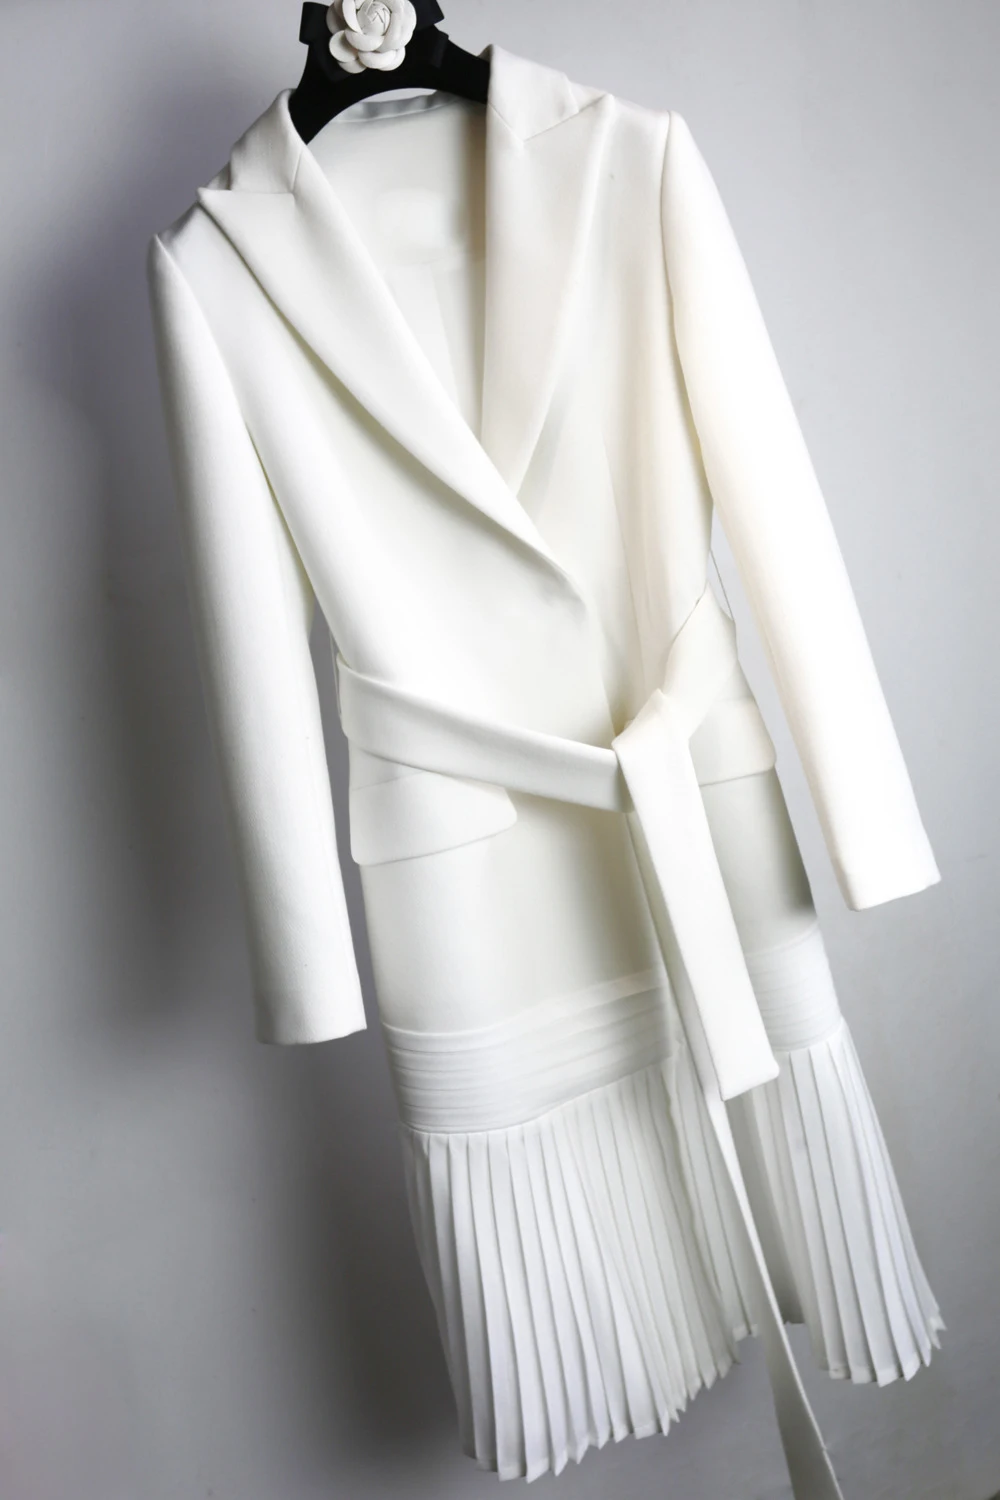 Осенний Блейзер Женское пальто со шнуровкой туника, кардиган пальто плиссированный карман белый Длинный блейзер ветровка модная одежда - Цвет: white